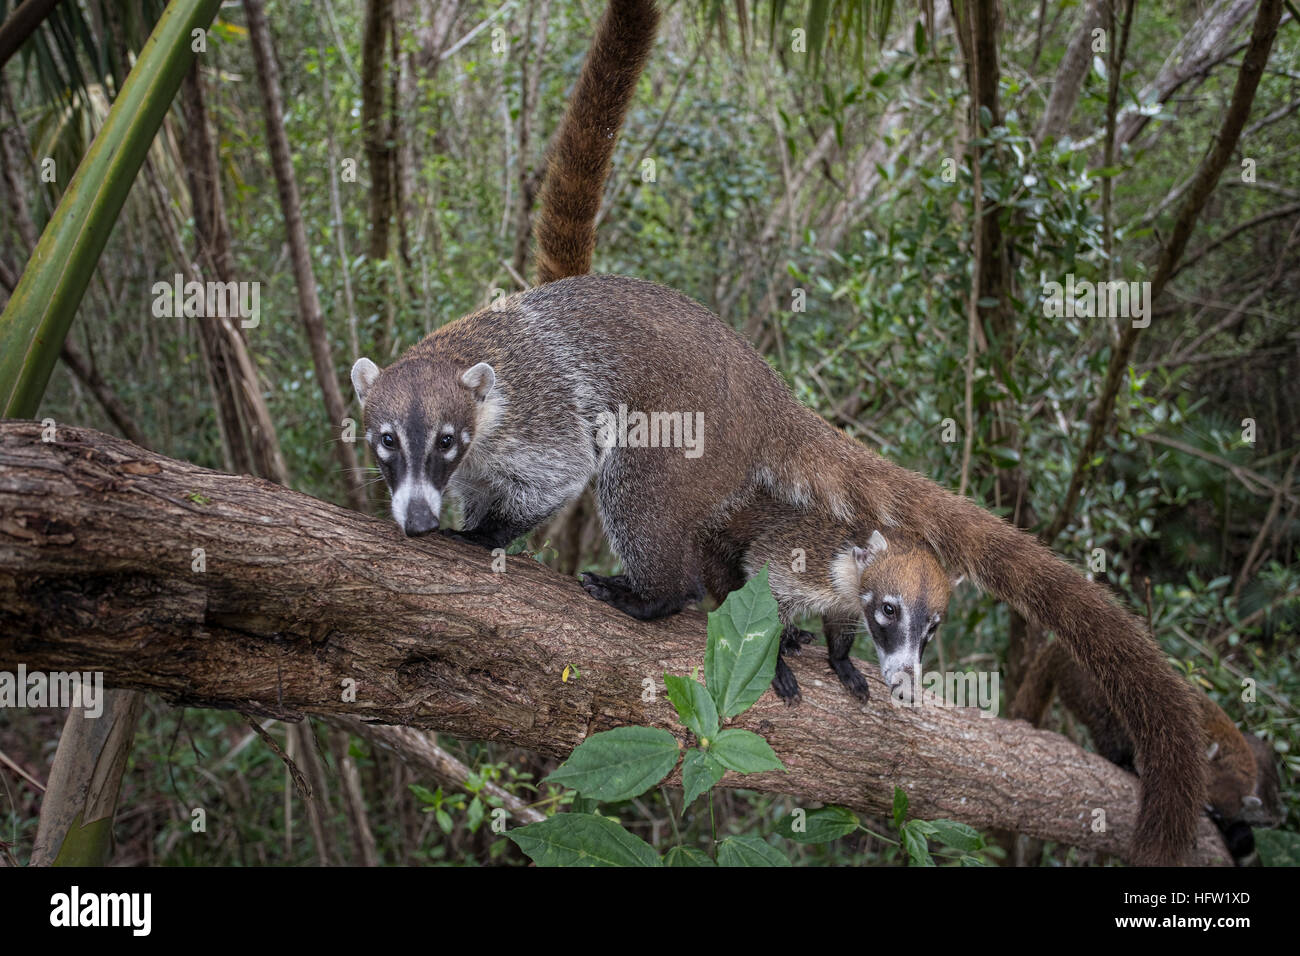 La faune de la jungle du Mexique Coati mundi de l'alimentation animale. Le Coati ou Coatimundi est faune animal, membre de la famille raton laveur. Banque D'Images